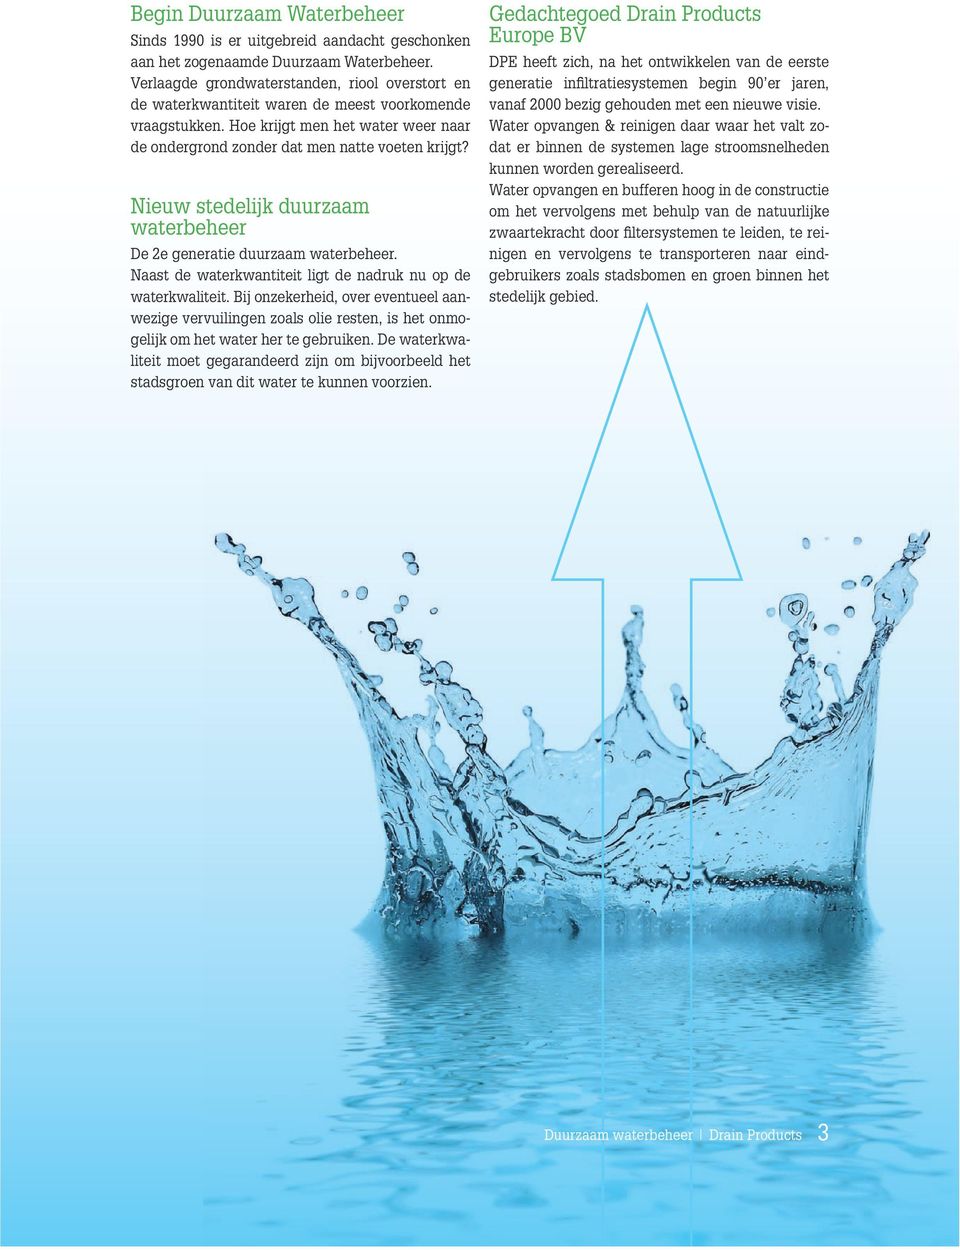 Nieuw stedelijk duurzaam waterbeheer De 2e generatie duurzaam waterbeheer. Naast de waterkwantiteit ligt de nadruk nu op de waterkwaliteit.